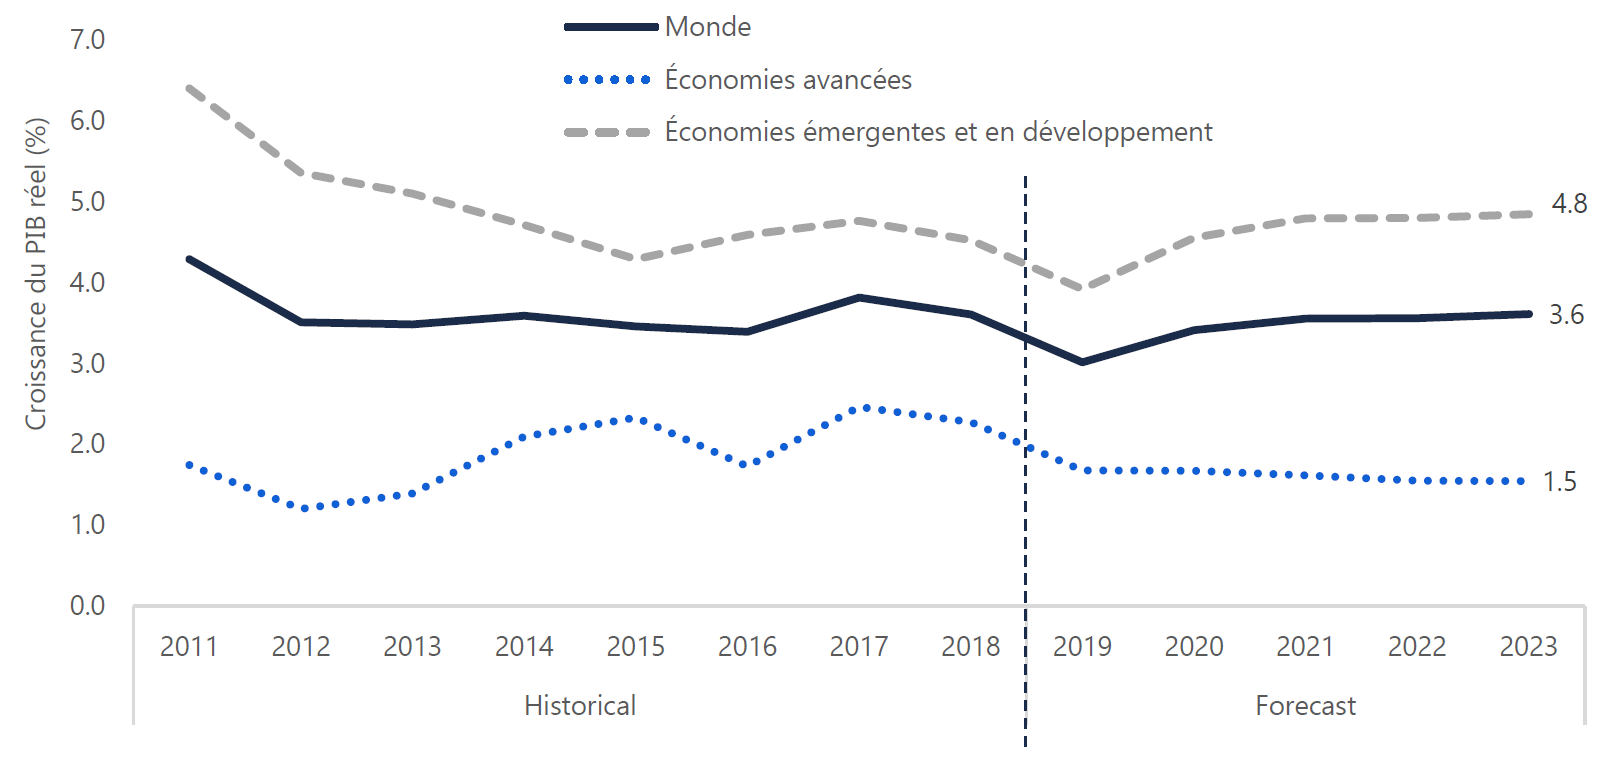 Ralentissement de la croissance mondiale en 2019 suivi d'une croissance soutenue pendant la période à l'étude